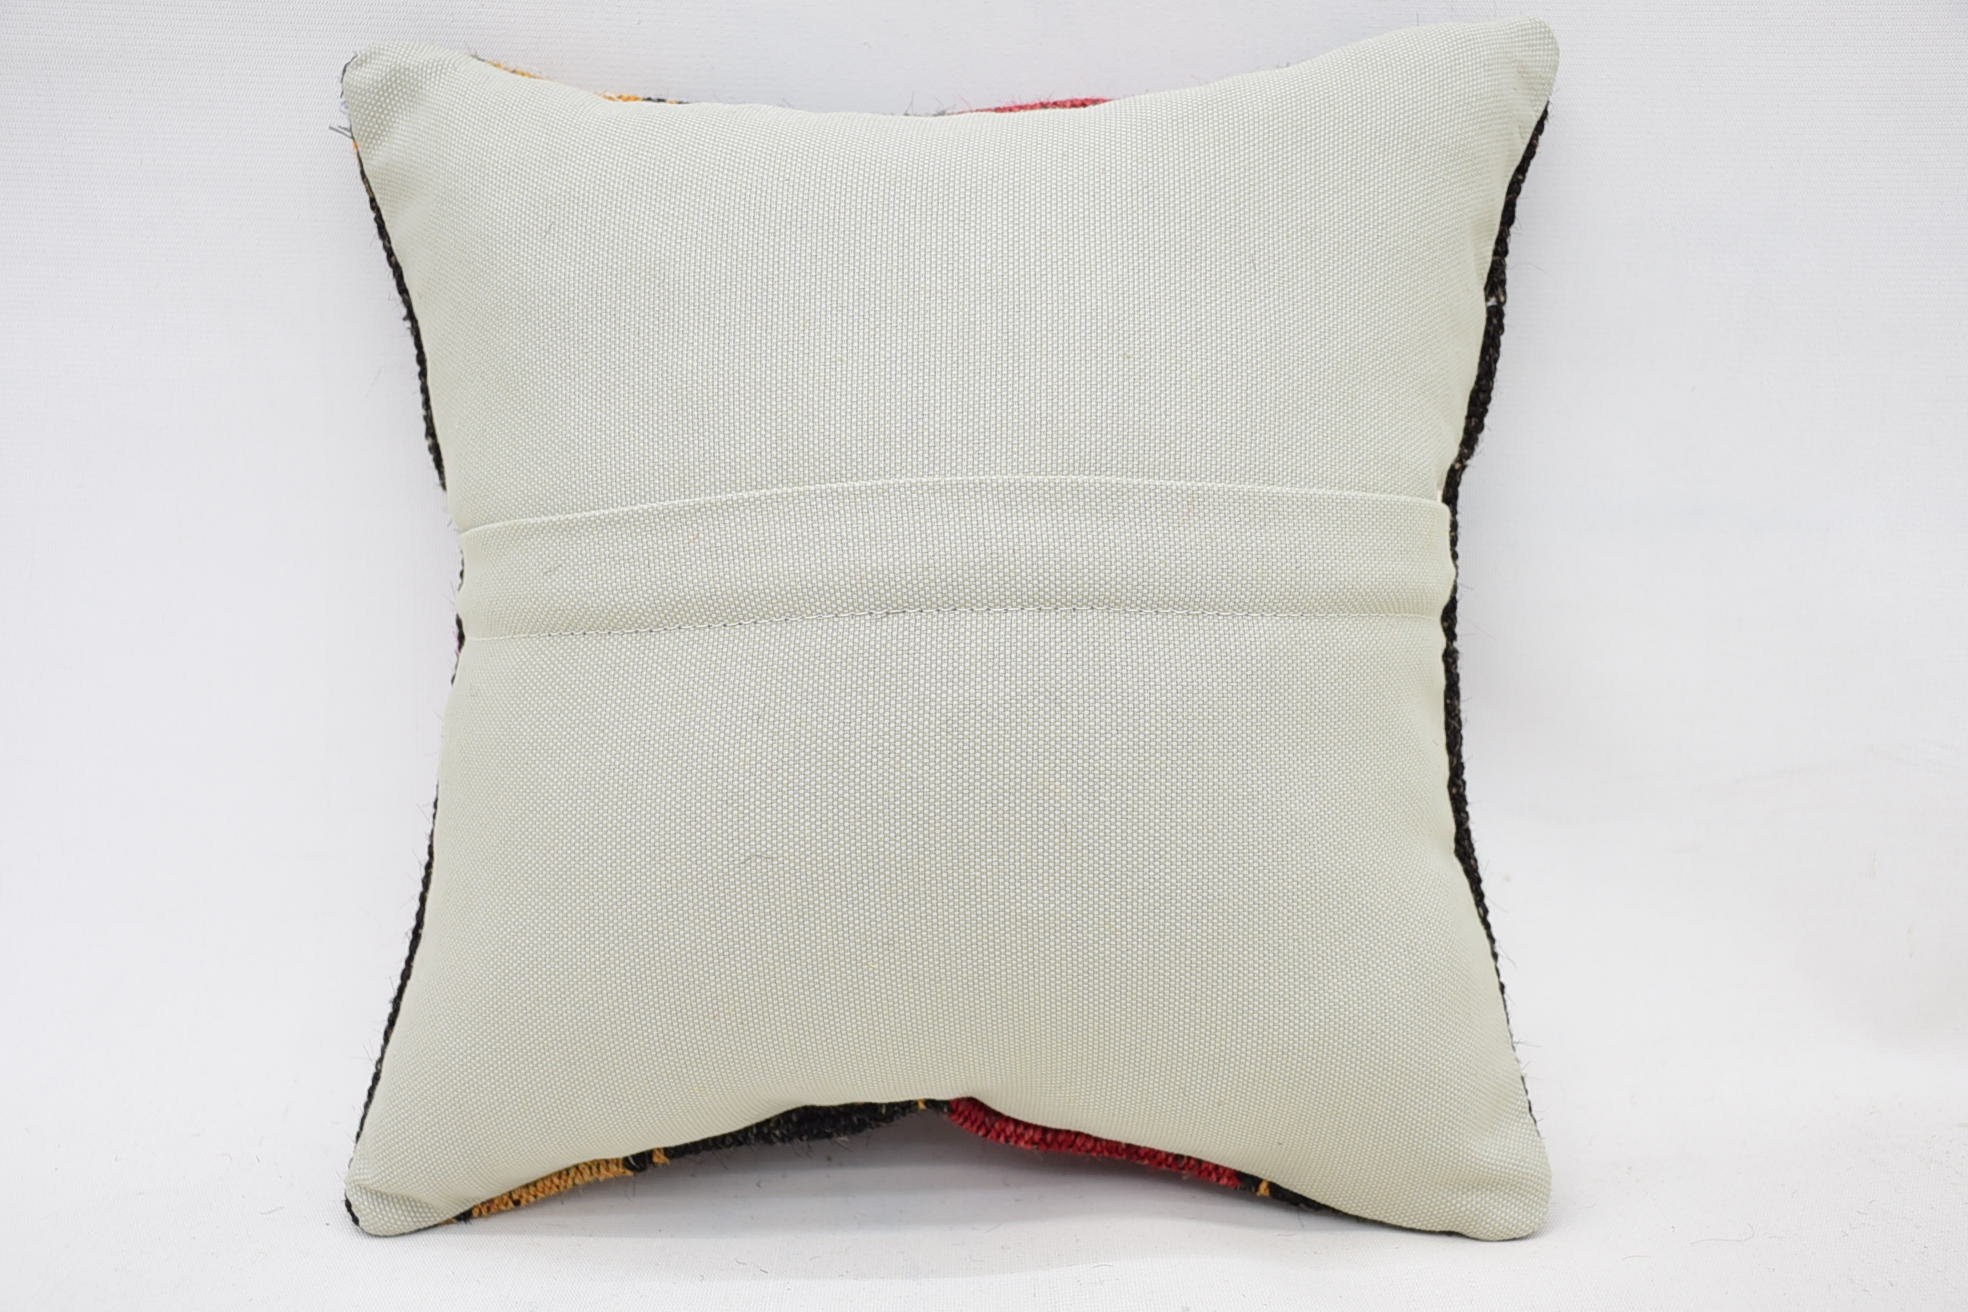 Vintage Pillow, Vintage Kilim Pillow Pillow Case, 12"x12" Red Pillow, Kilim Pillow, Throw Kilim Pillow, Ethnic Throw Pillow Cover